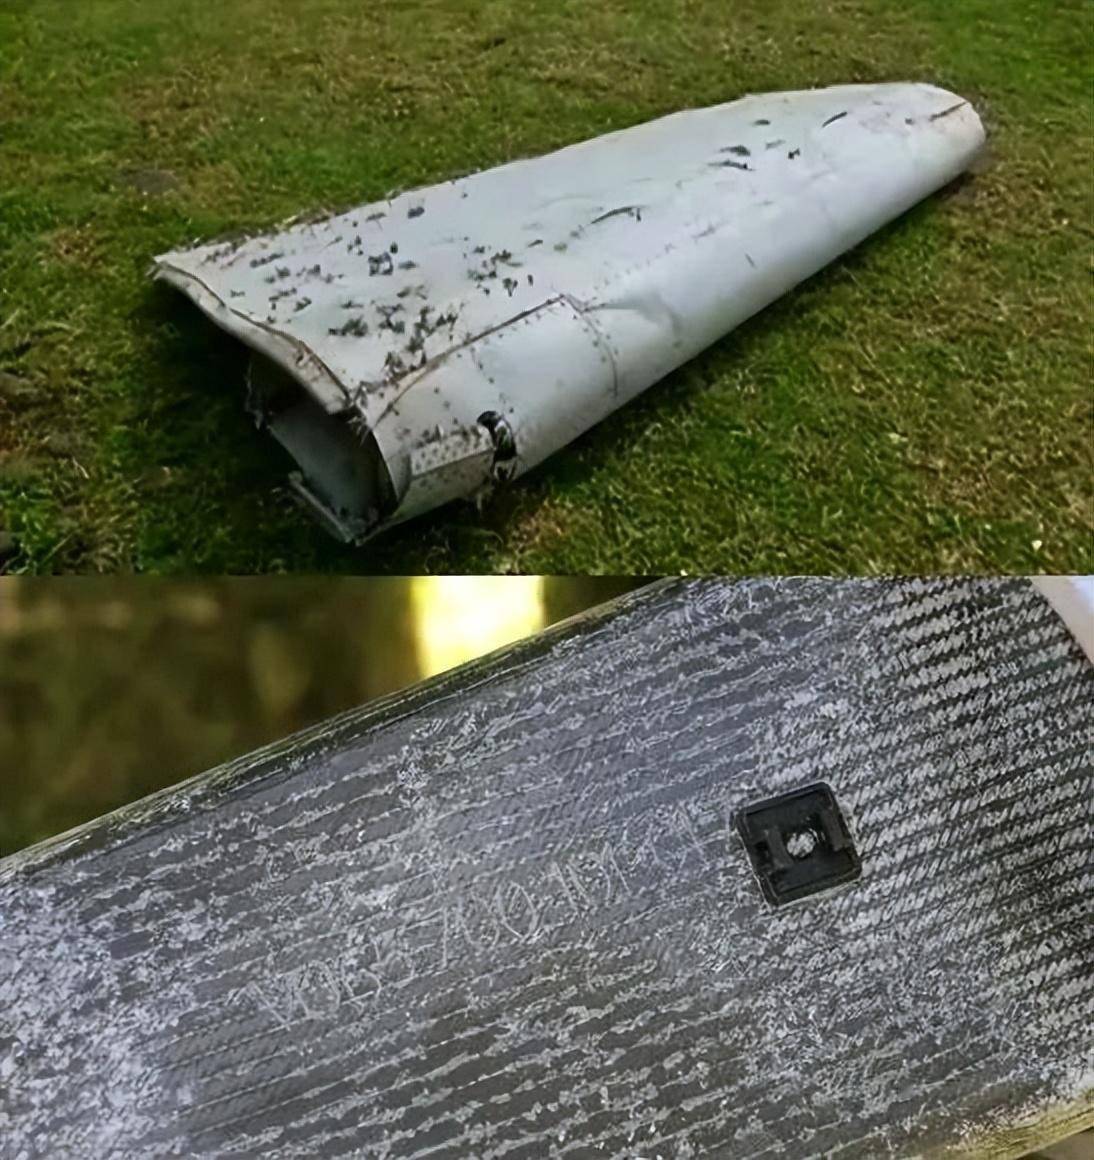 失踪MH370又有新线索！马岛渔民捡到起落架碎片，怀疑蓄意坠毁